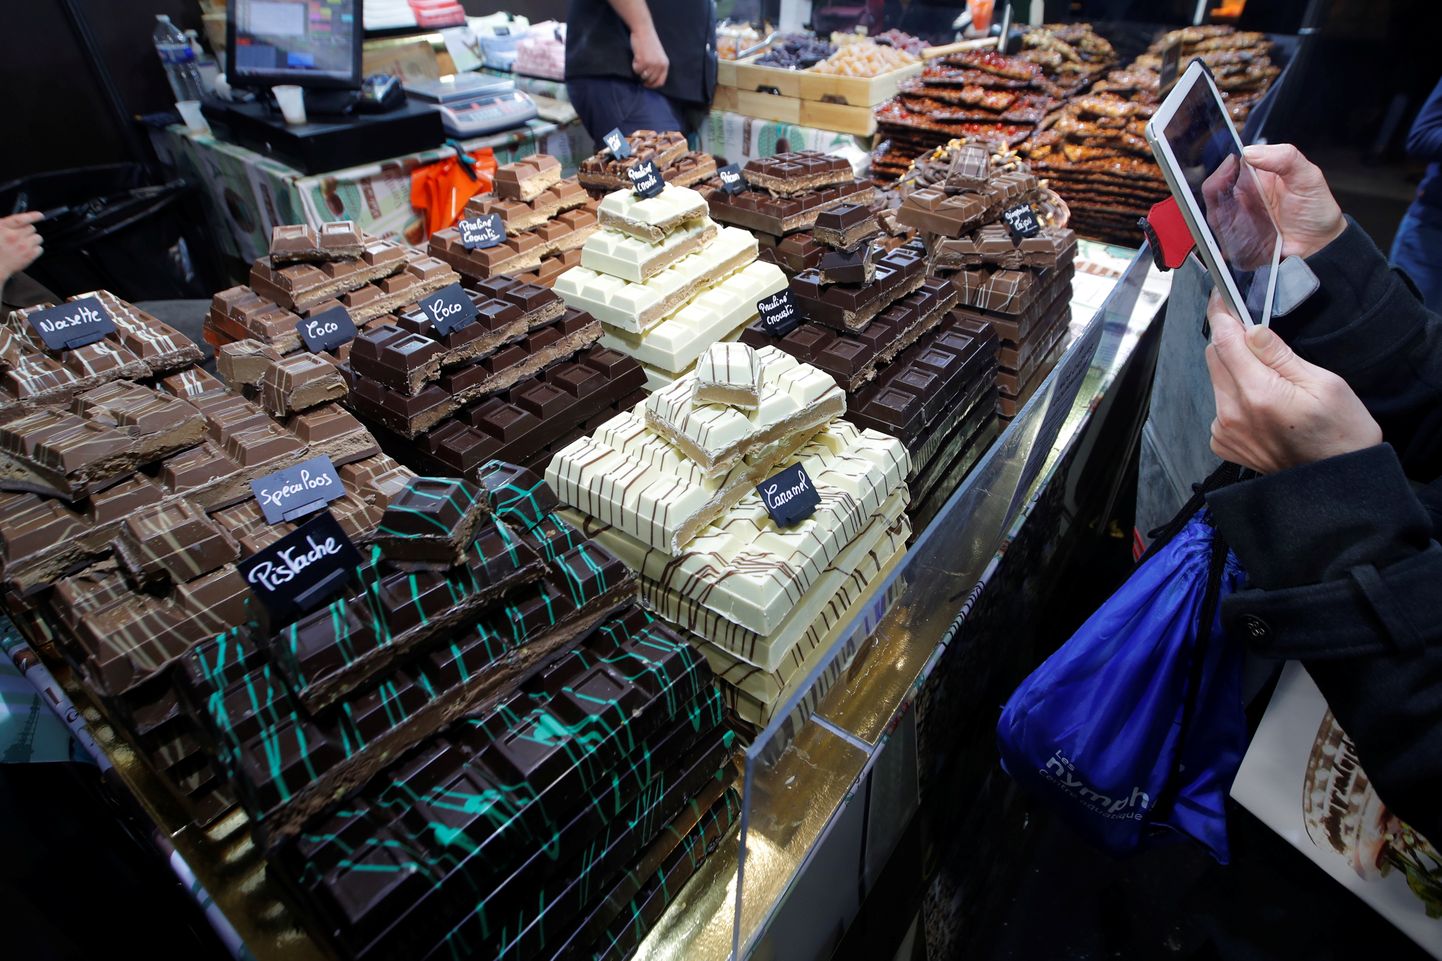 Venemaal varastati võlgade tasumiseks hiigelkogus šokolaadi.